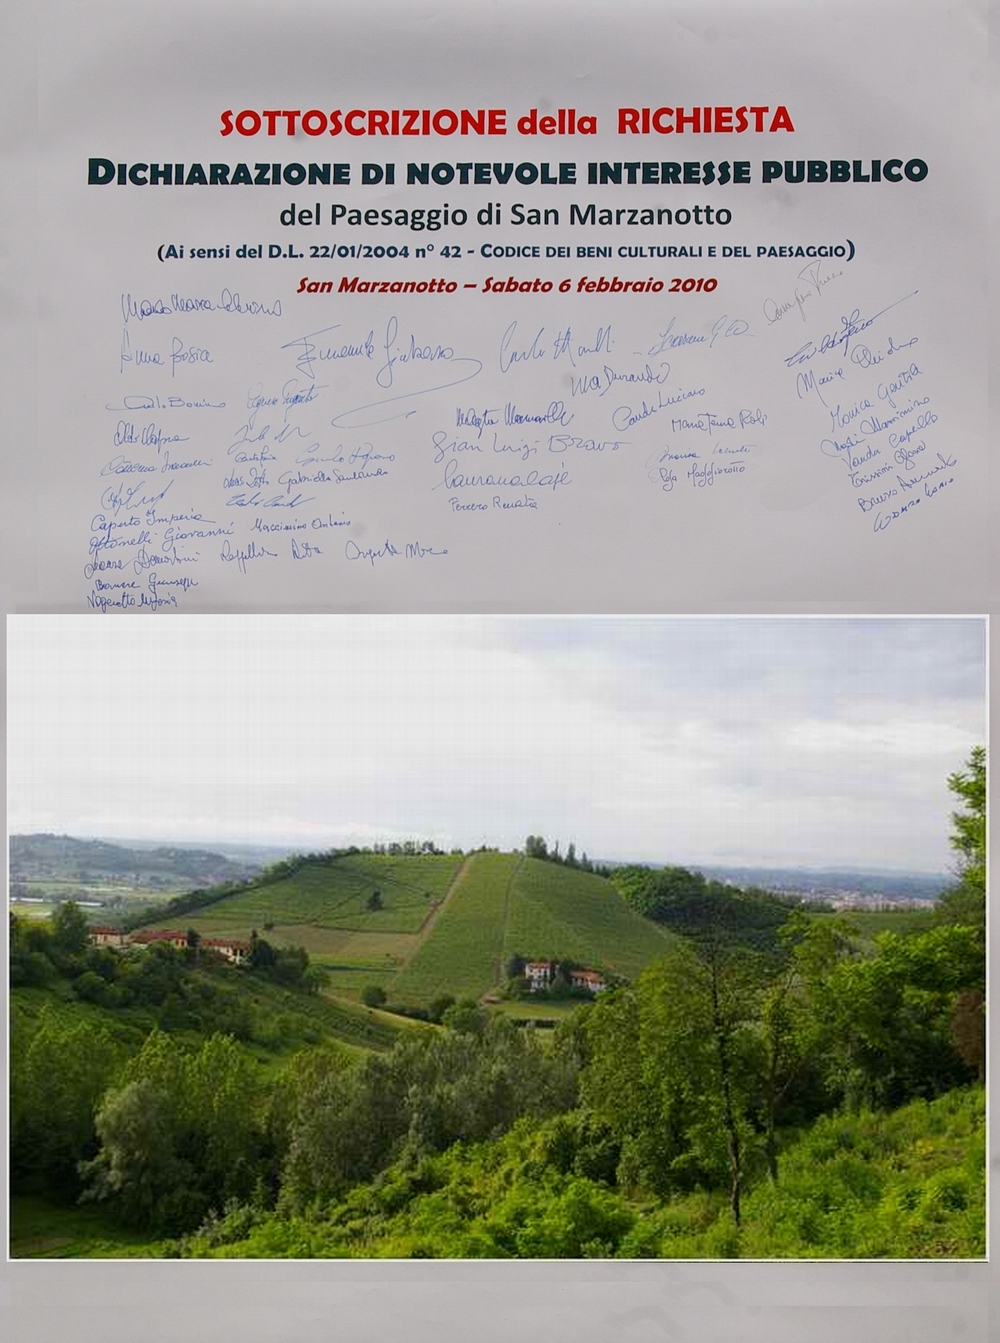 Sottoscrizione della dichiarazione di notevole interesse pubblico del paesaggio di San Marzanotto.